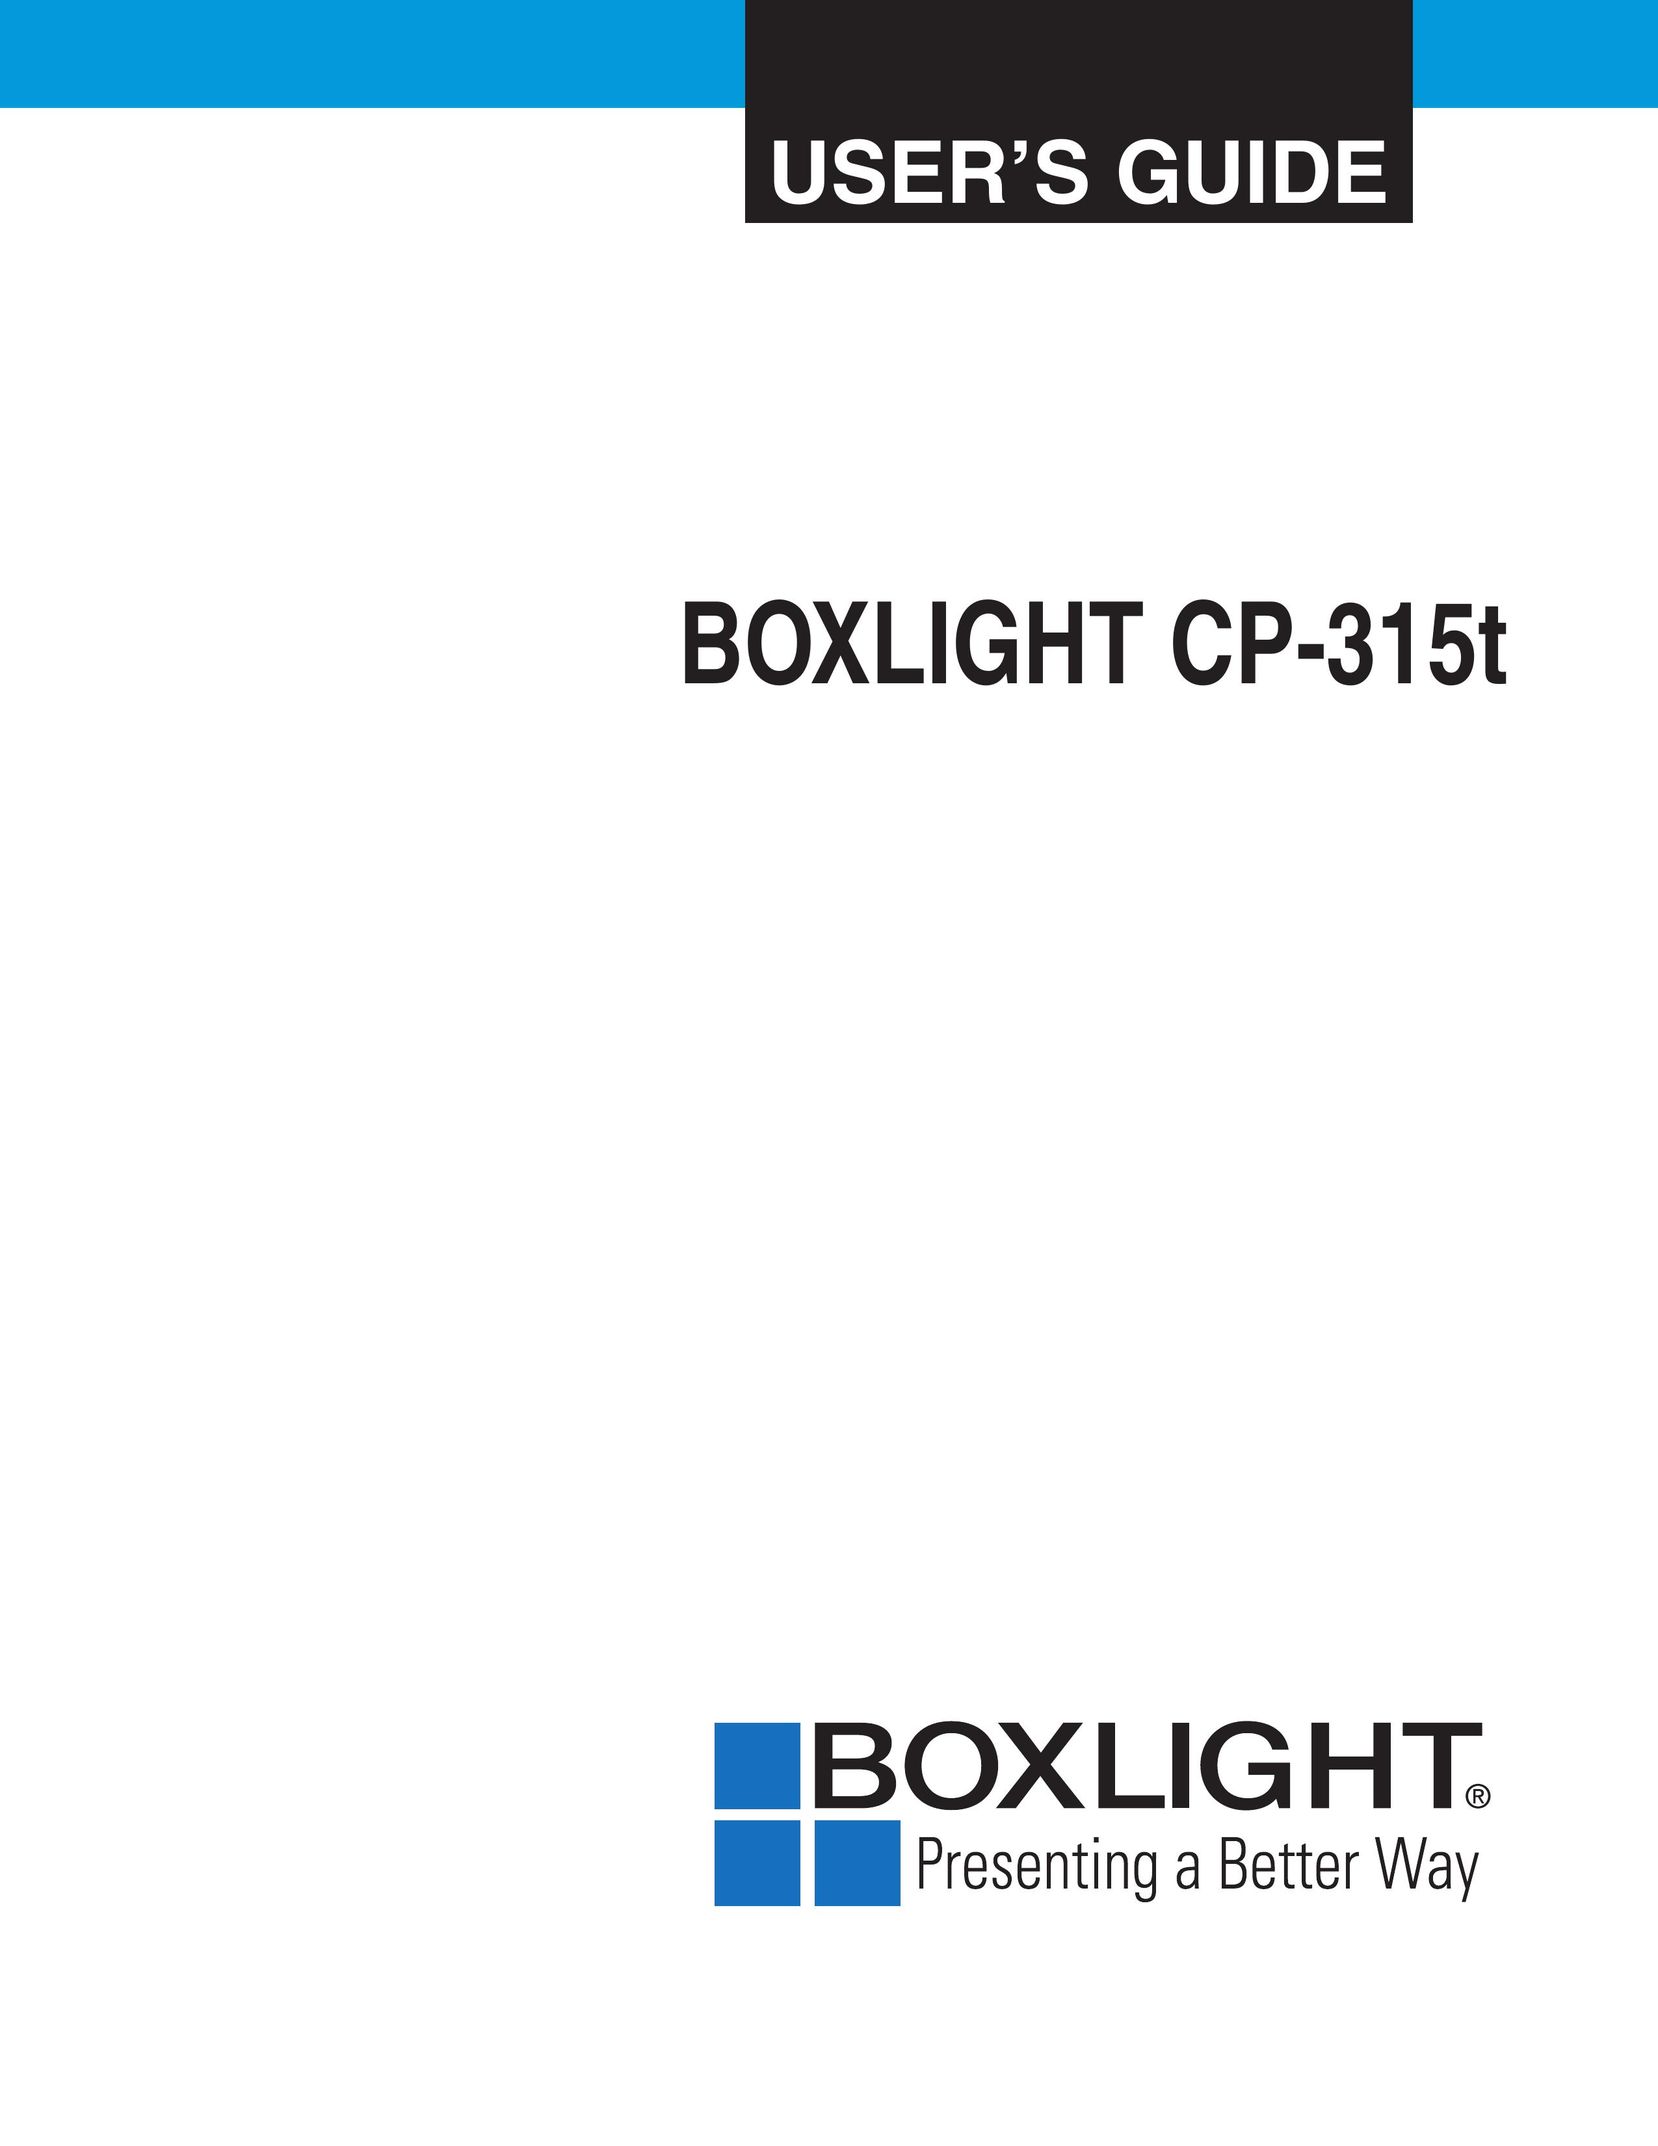 BOXLIGHT CP-315T Projector User Manual